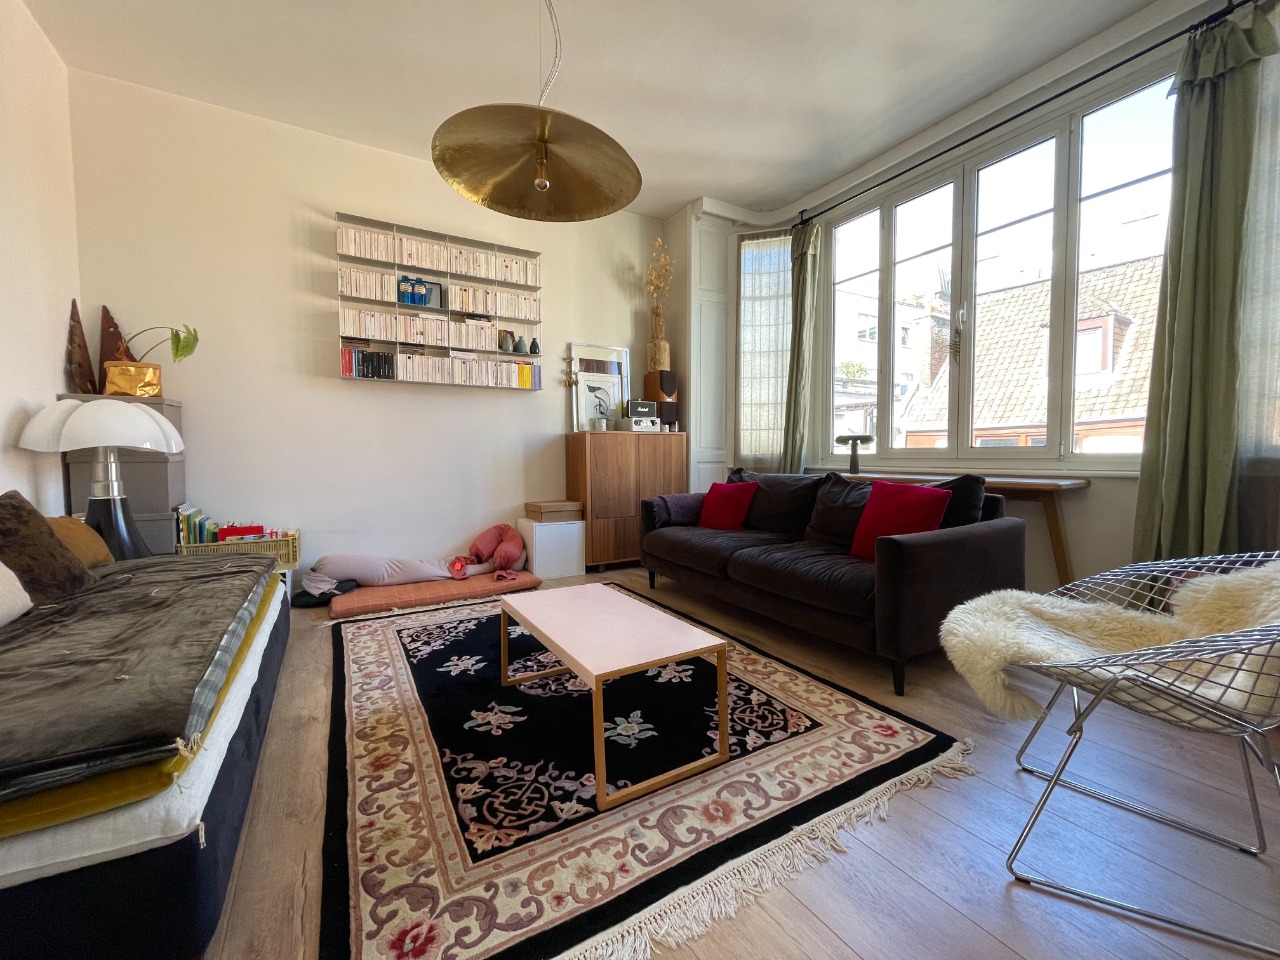 Appartement 3 pieces 80m2 proximite rihour Photo 3 - Paris Lille Immobilier